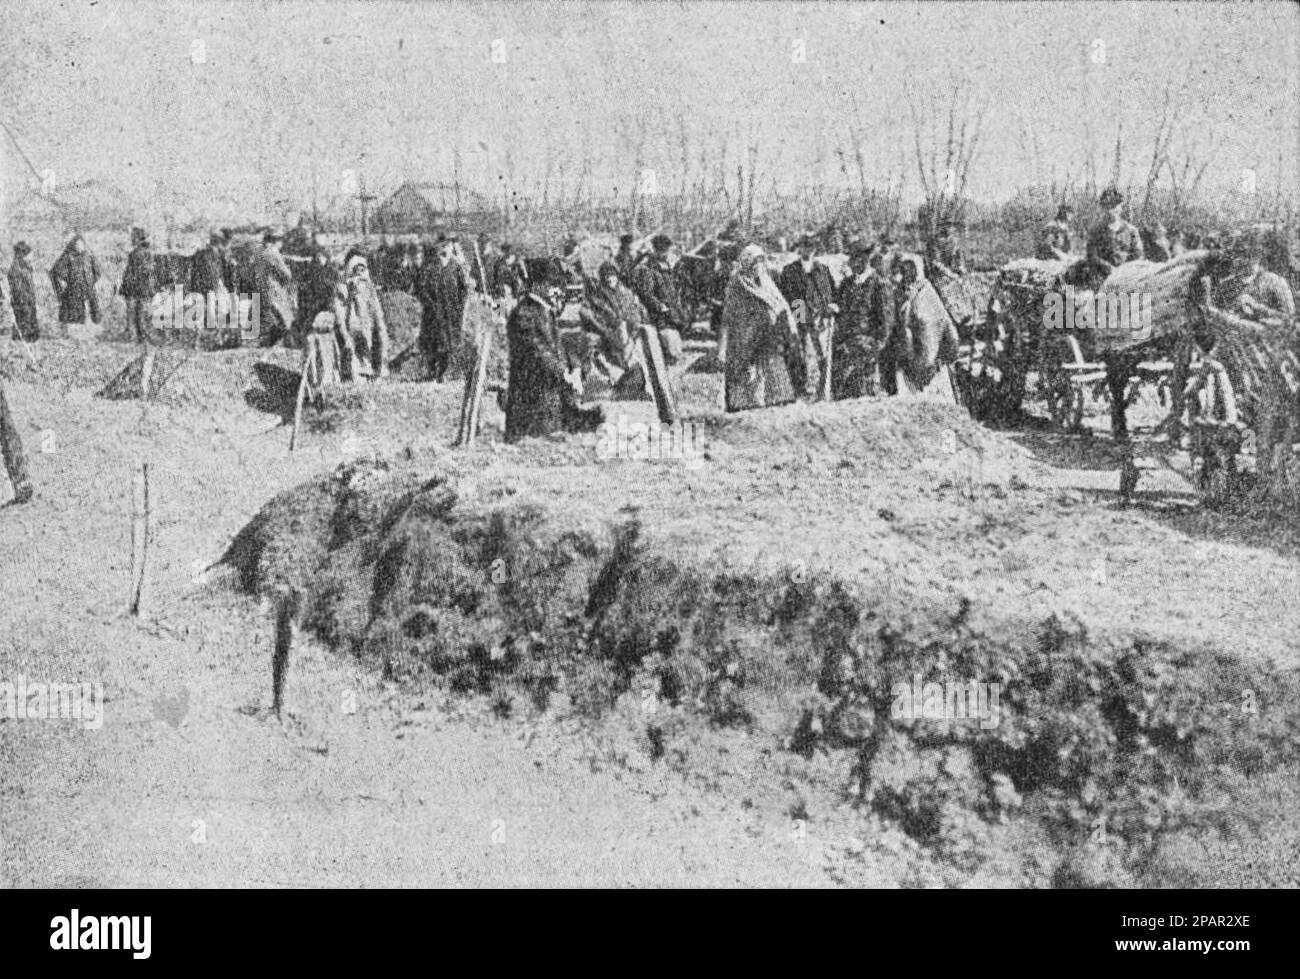 La tomba comune delle vittime del disastro nel villaggio ungherese di Ekerito, dove 500 persone sono bruciate in un teatro rurale nel 1910. Foto dal 1910. Foto Stock